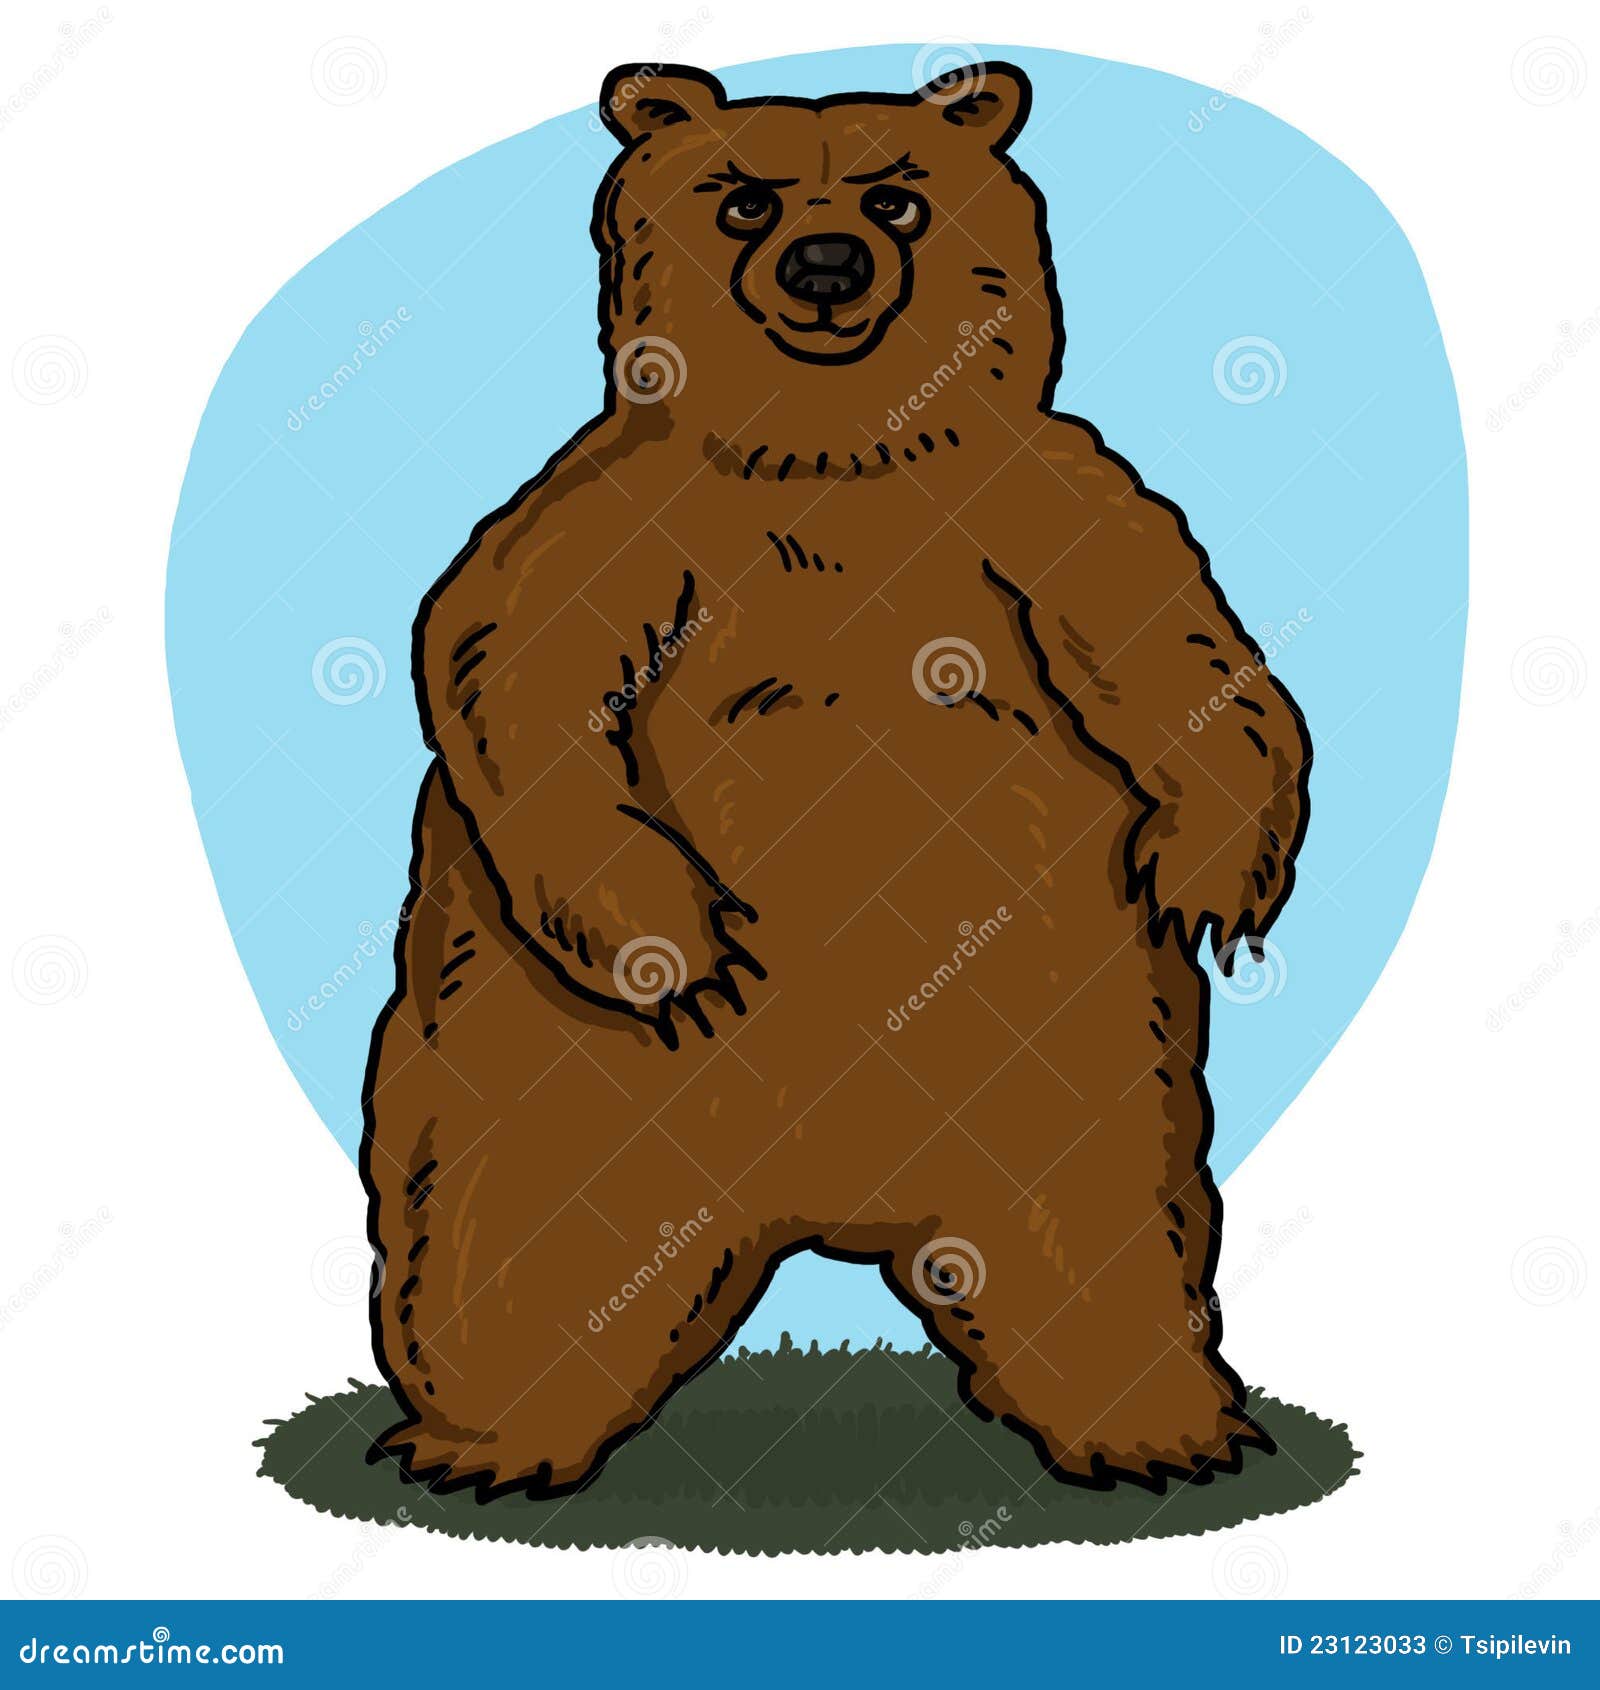 Bear cartoon stock illustration. Illustration of isolated - 23123033